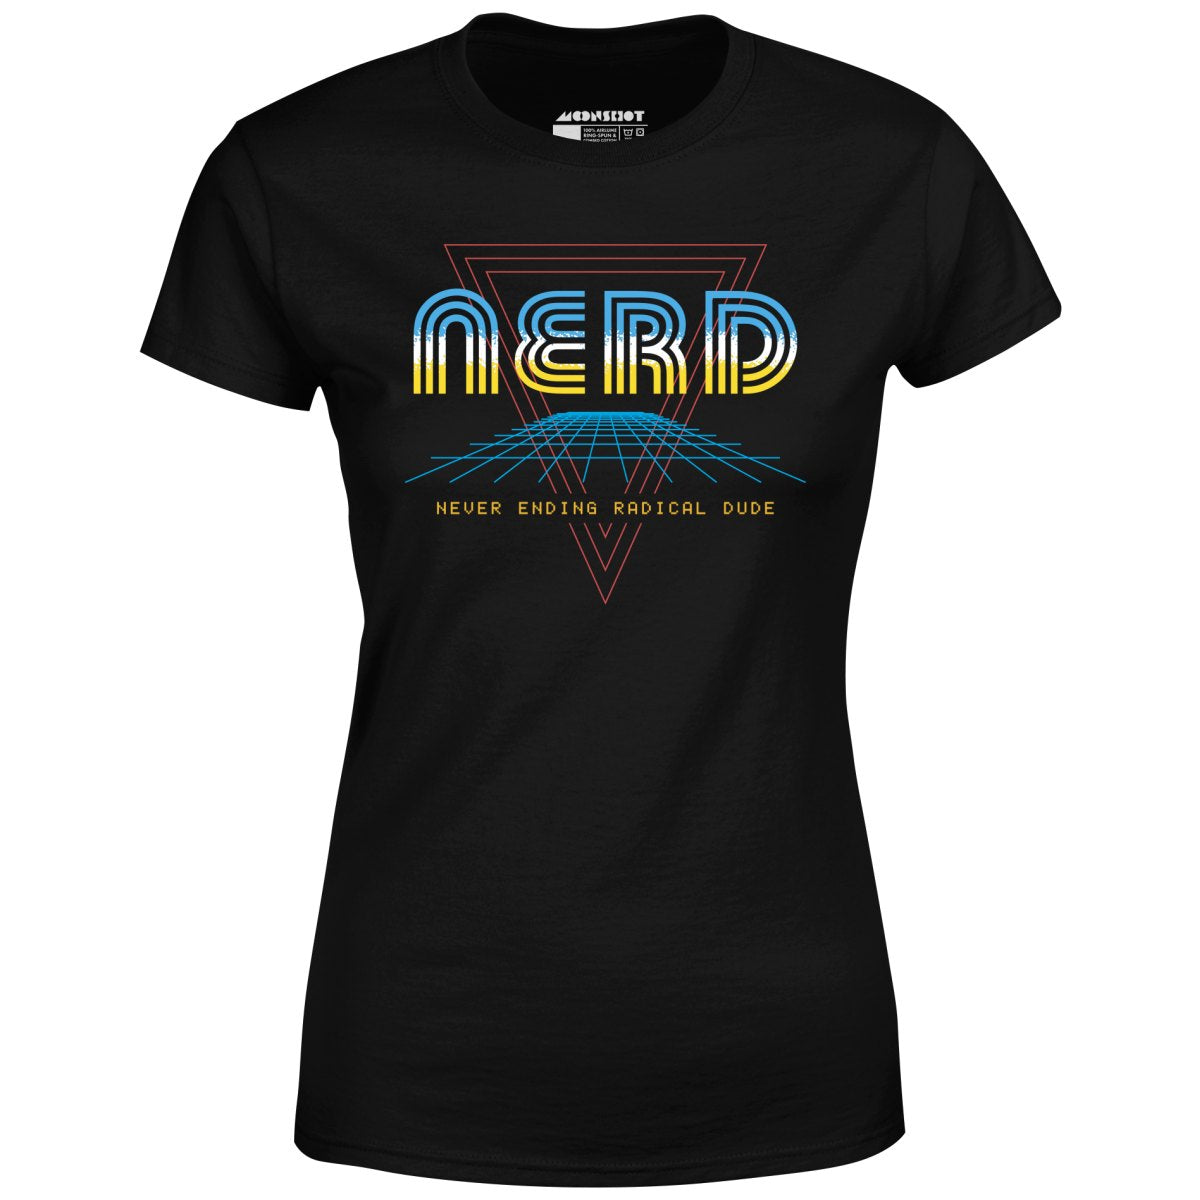 Nerd Never Ending Radical Dude - Women's T-Shirt